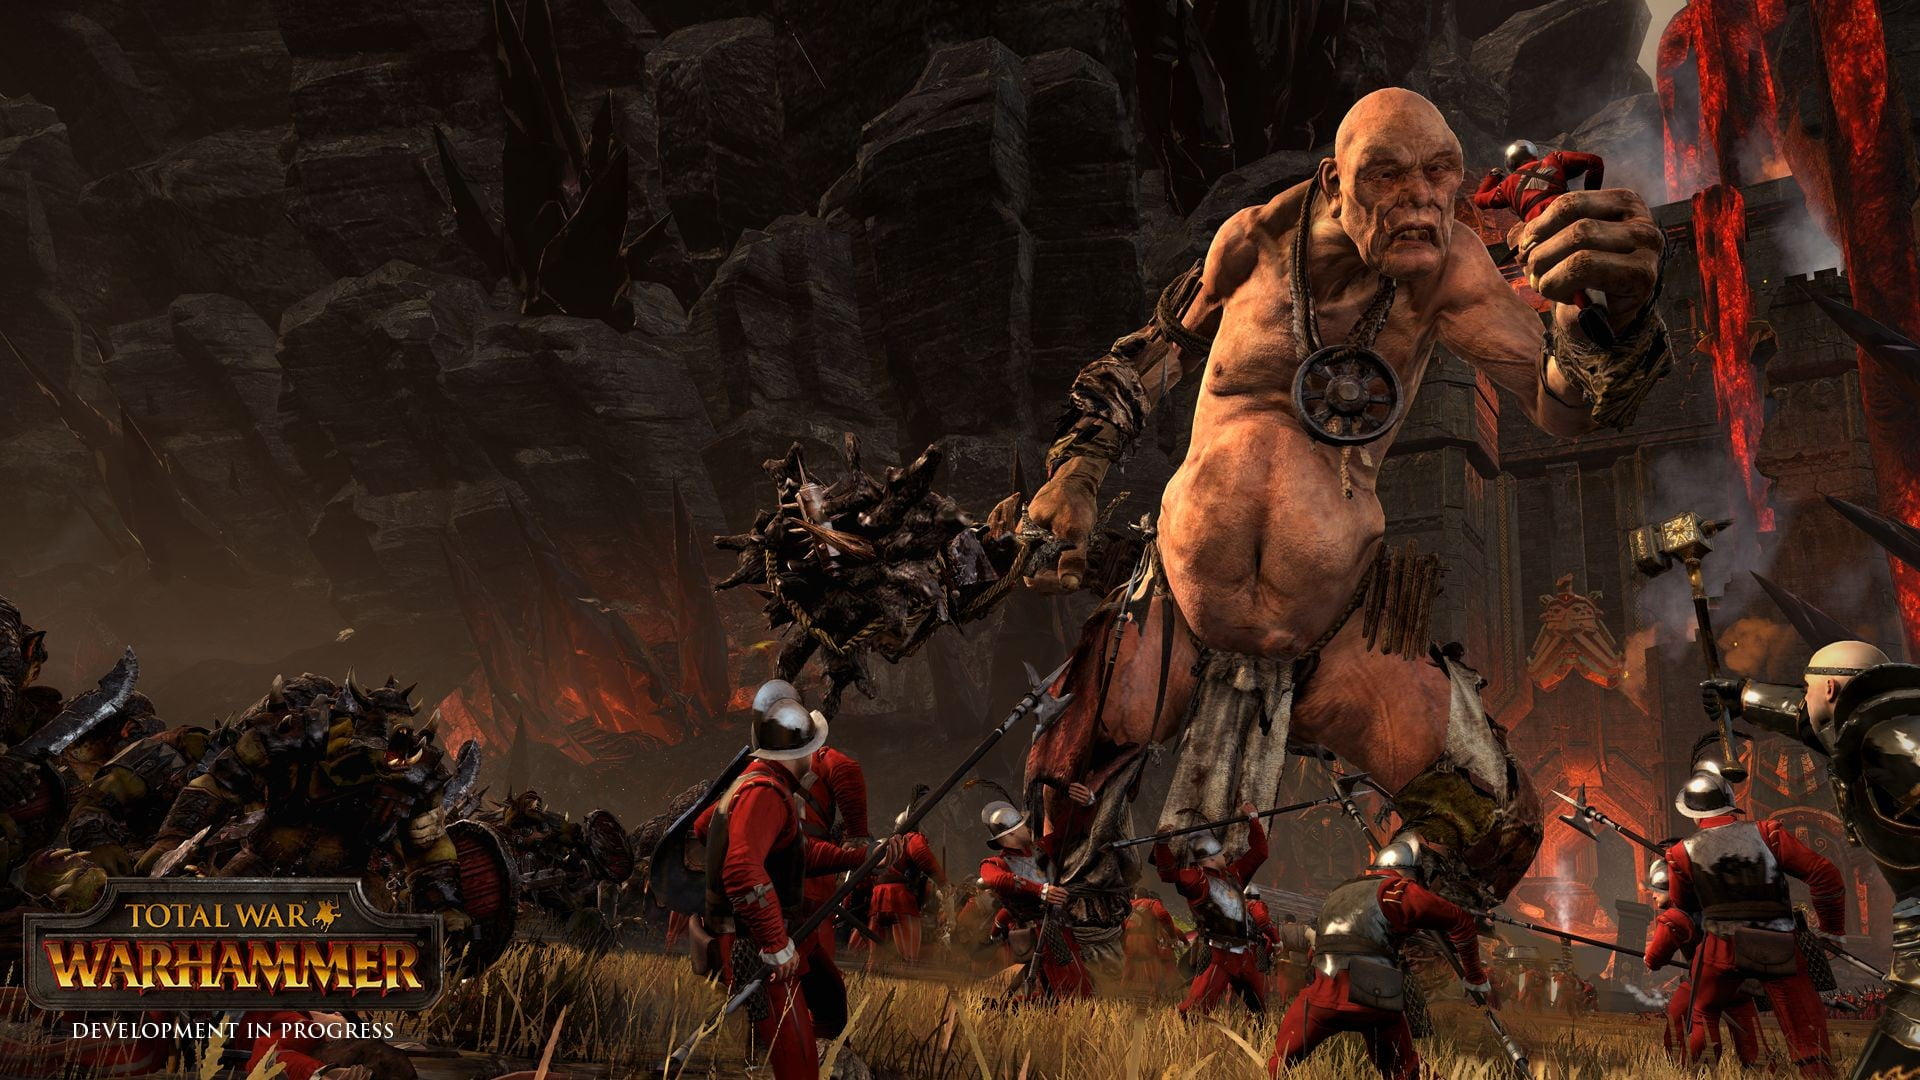 war game art concept, Total War: Warhammer, orcs, Fantasy Battle